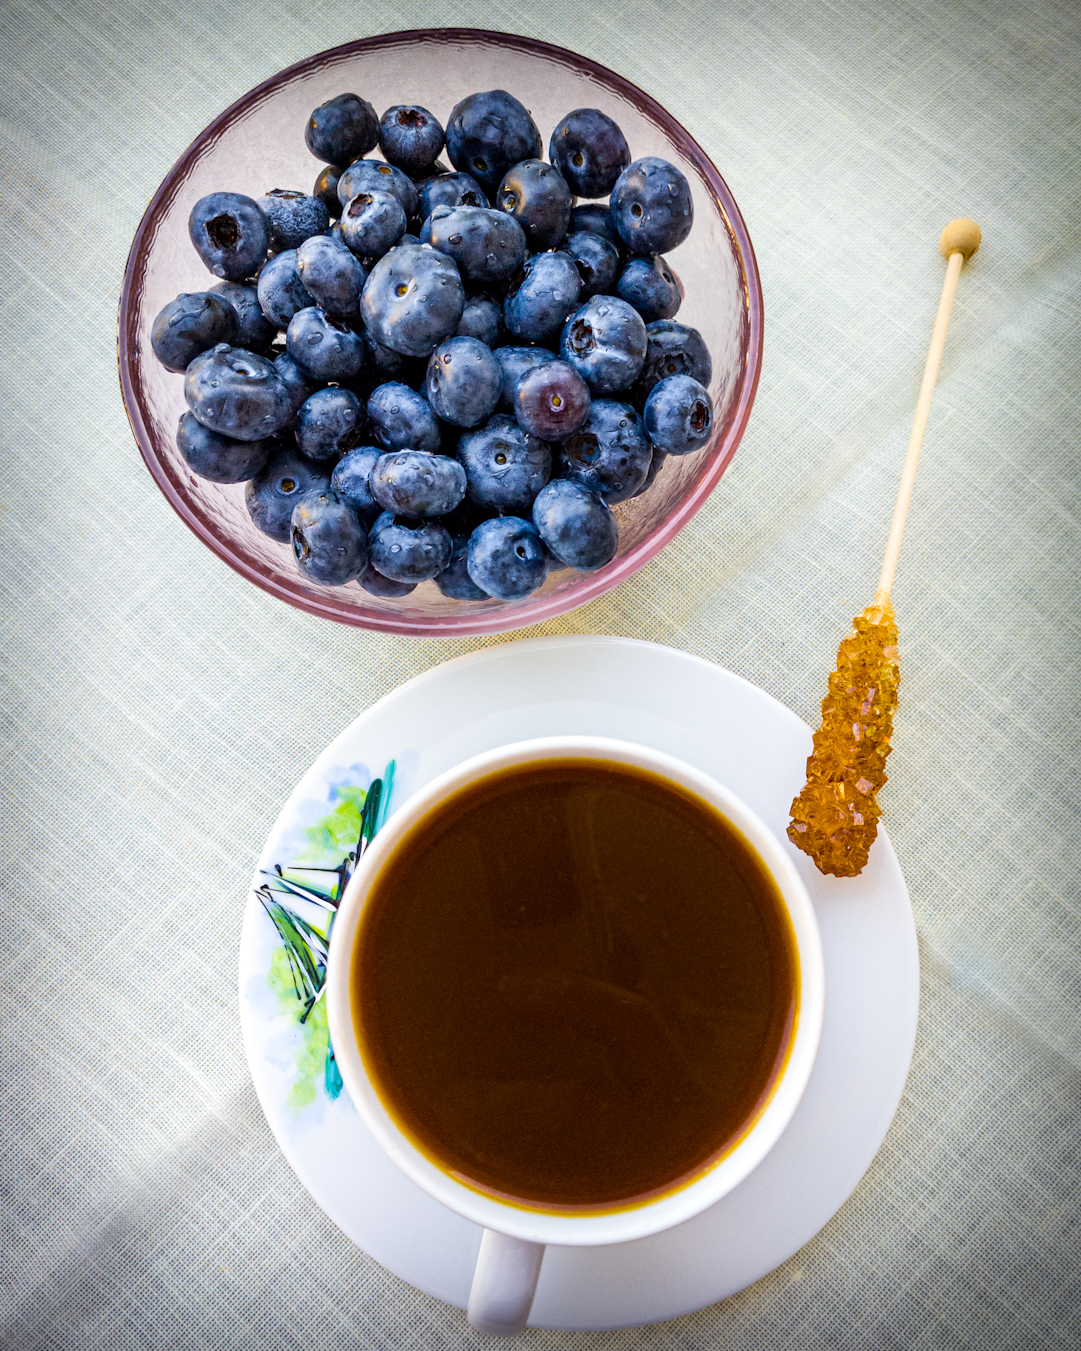 słodkie i zdrowe - miseczka borówek jako dodatek do kawy, widok z góry